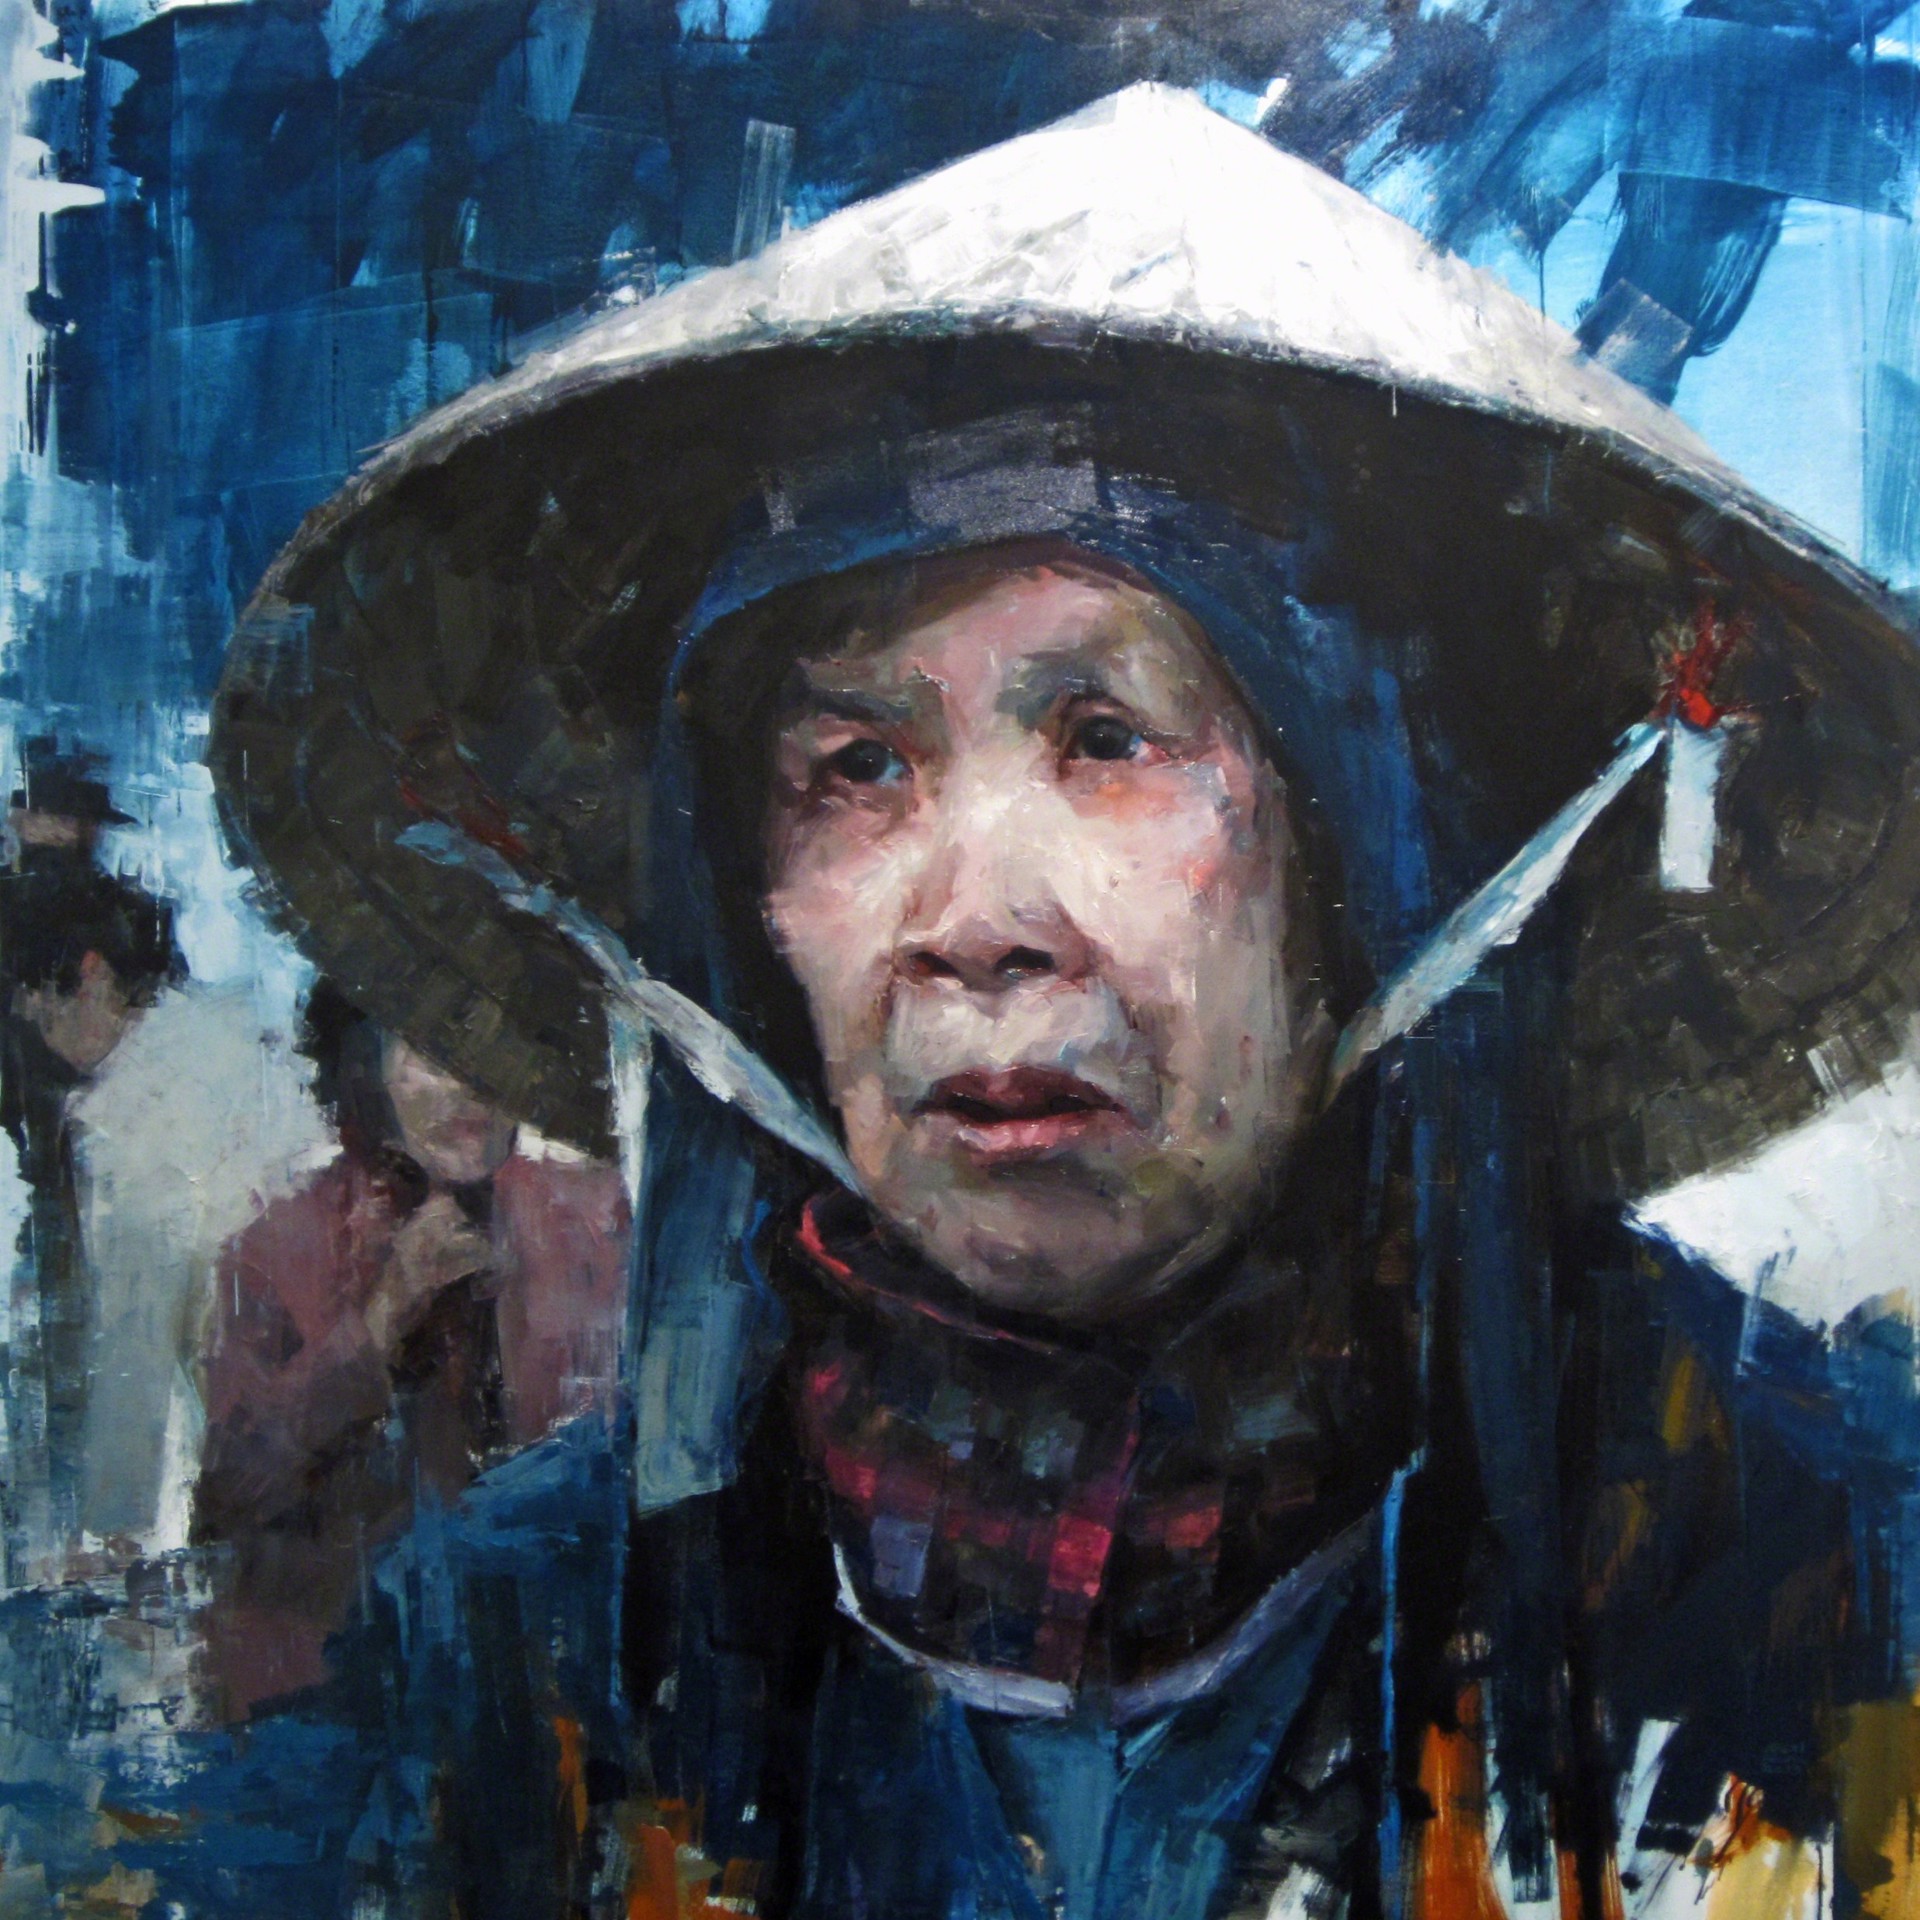 Market Woman by Aron Belka